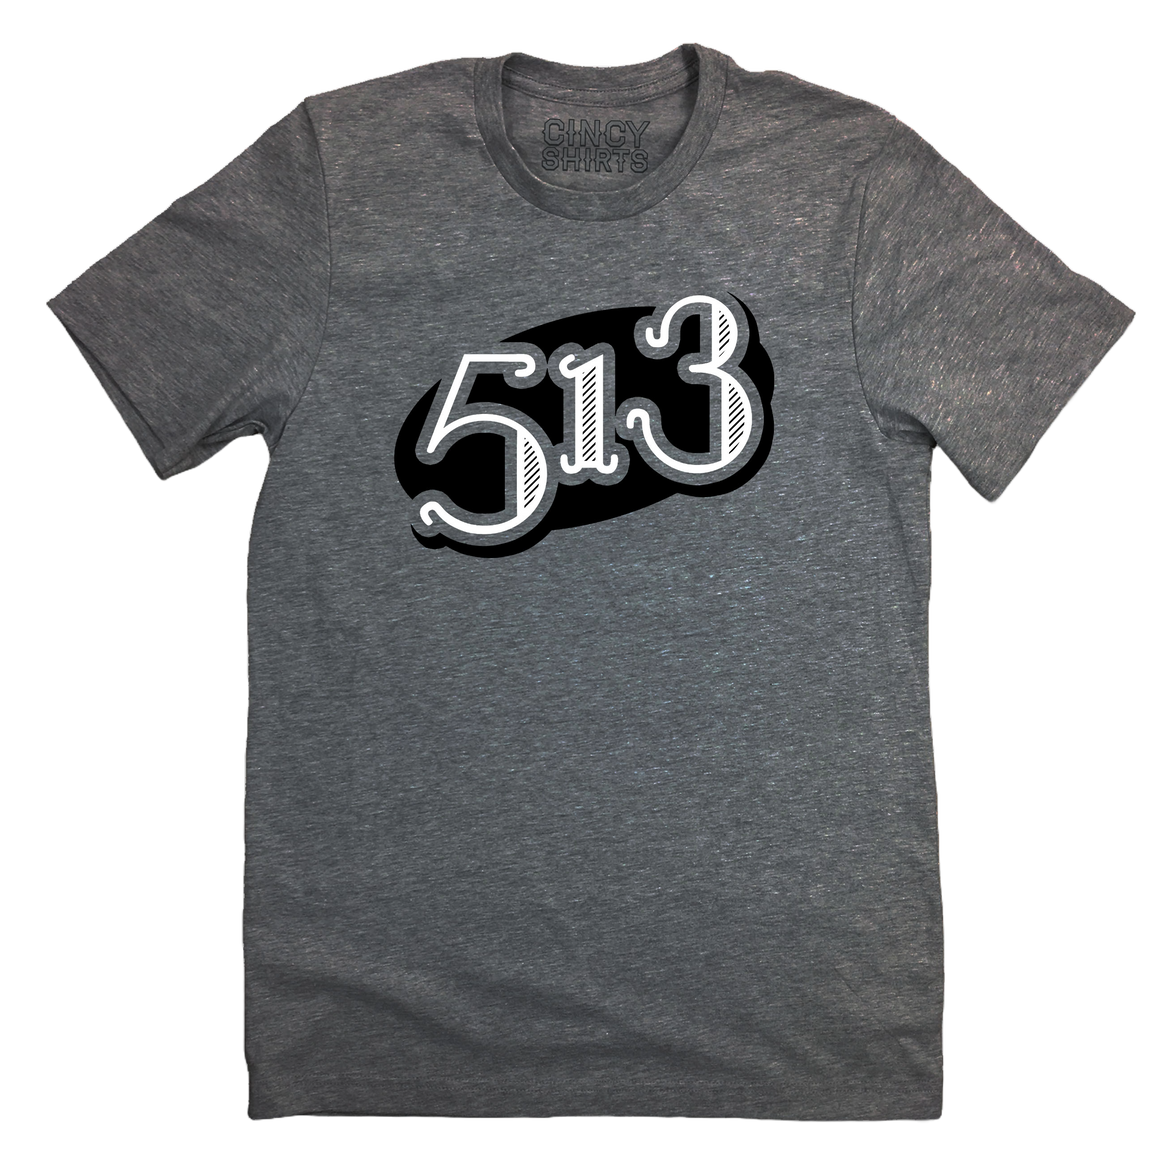 513 Oval - Cincy Shirts